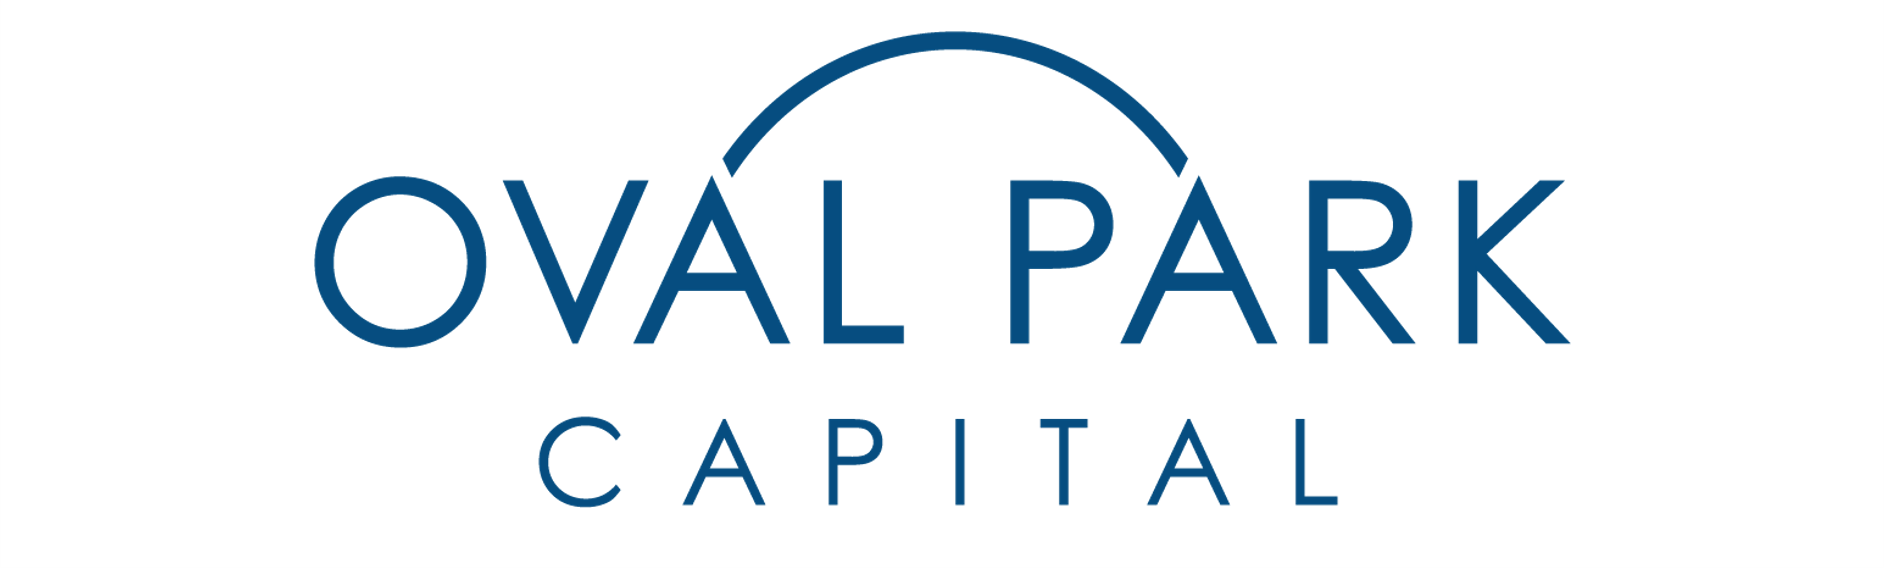 Oval Park Capital logo